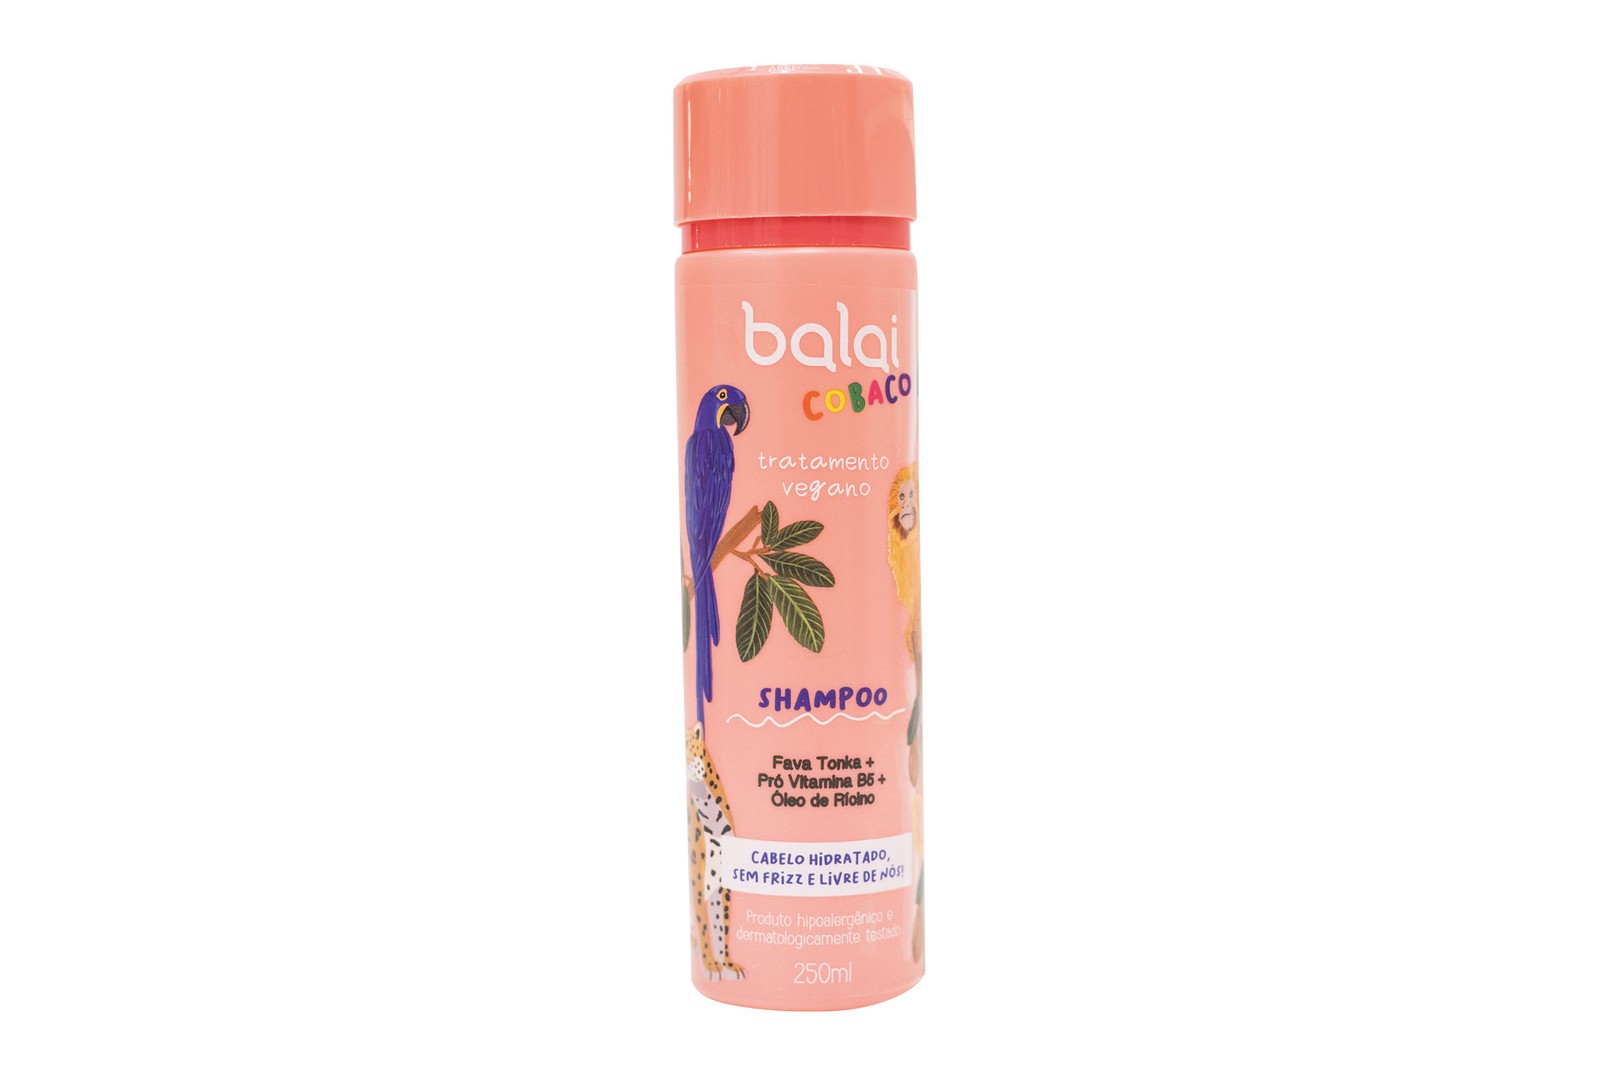 Limpeza divertida: A Balai Vegan Treatment para cabelos, 100% vegana, acaba de lançar a linha kids, a BalaiCobaco. São três tipos de xampu: nutrição, equilíbrio e hidratação (foto). As fórmulas são dermatologicamente testadas, e podem ser usadas a partir de 3 anos. Shampoo Fava Tonka + Pró Vitamina B5 + Óleo de Rícino, BalaiCobaco, R$ 29,90 (250 ml) | Foto: Divulgação